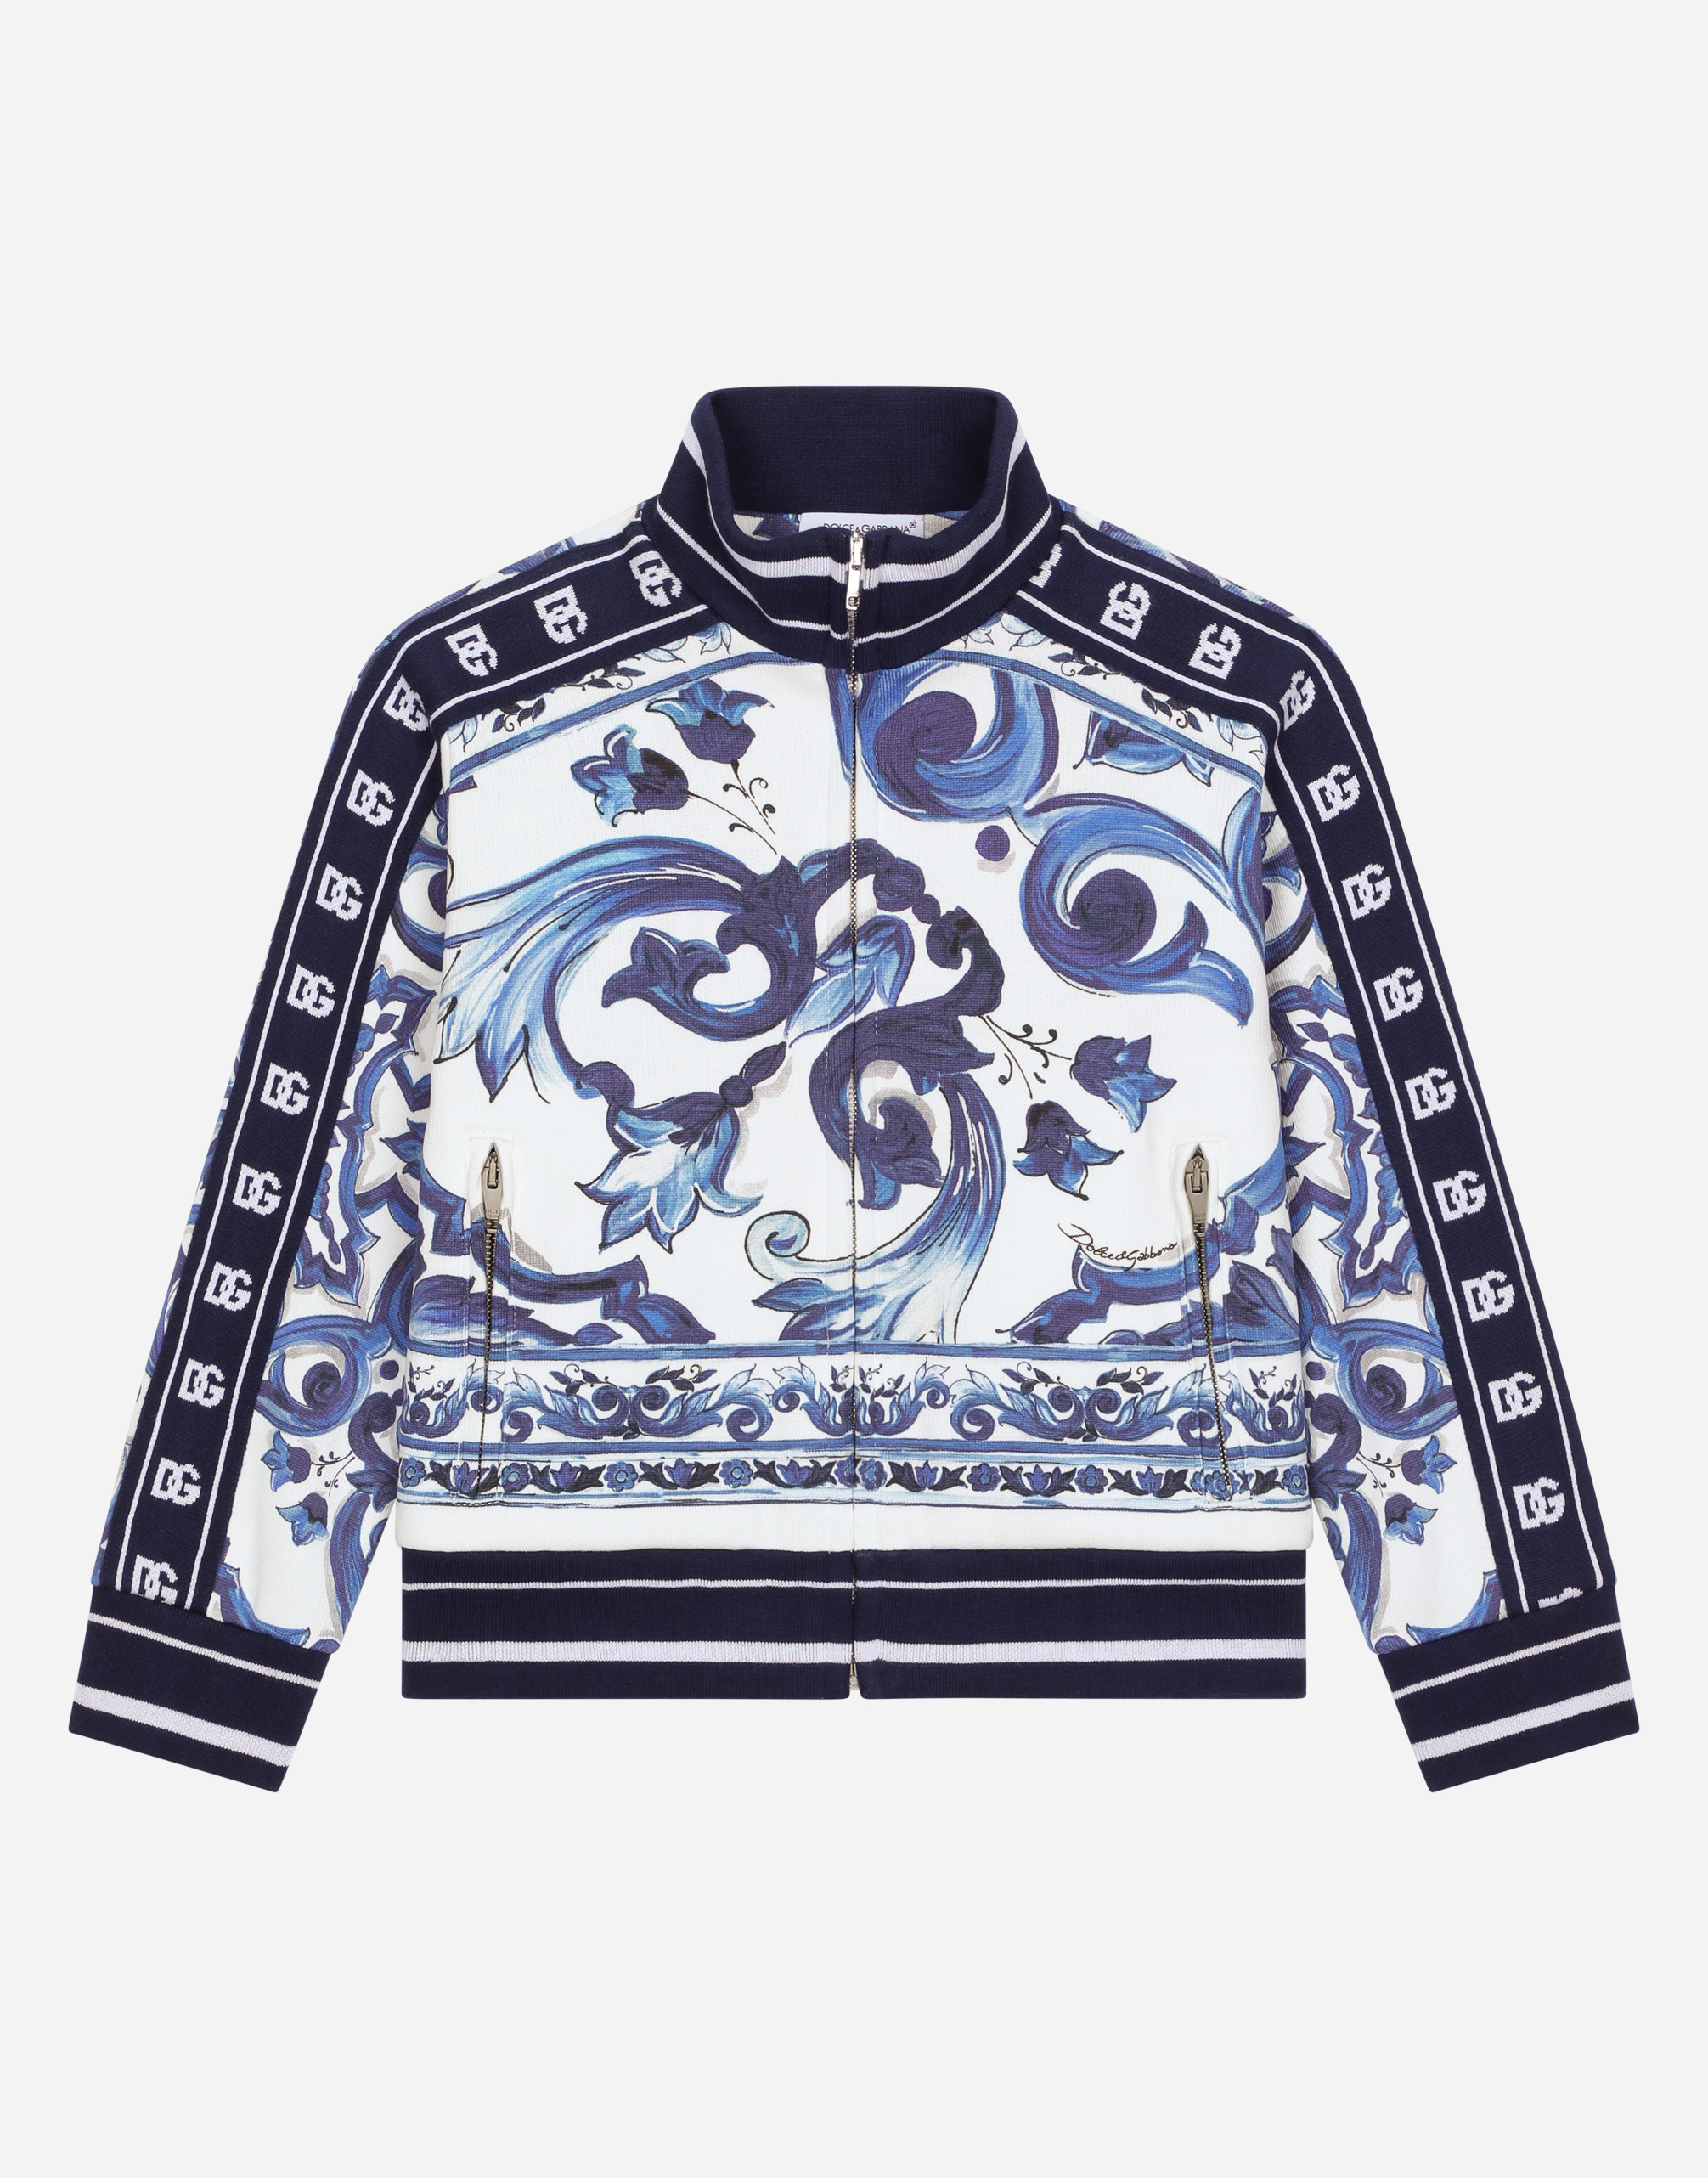 Dolce & Gabbana Kids' Zip-up Jersey Sweatshirt With Majolica Print In Multicolor